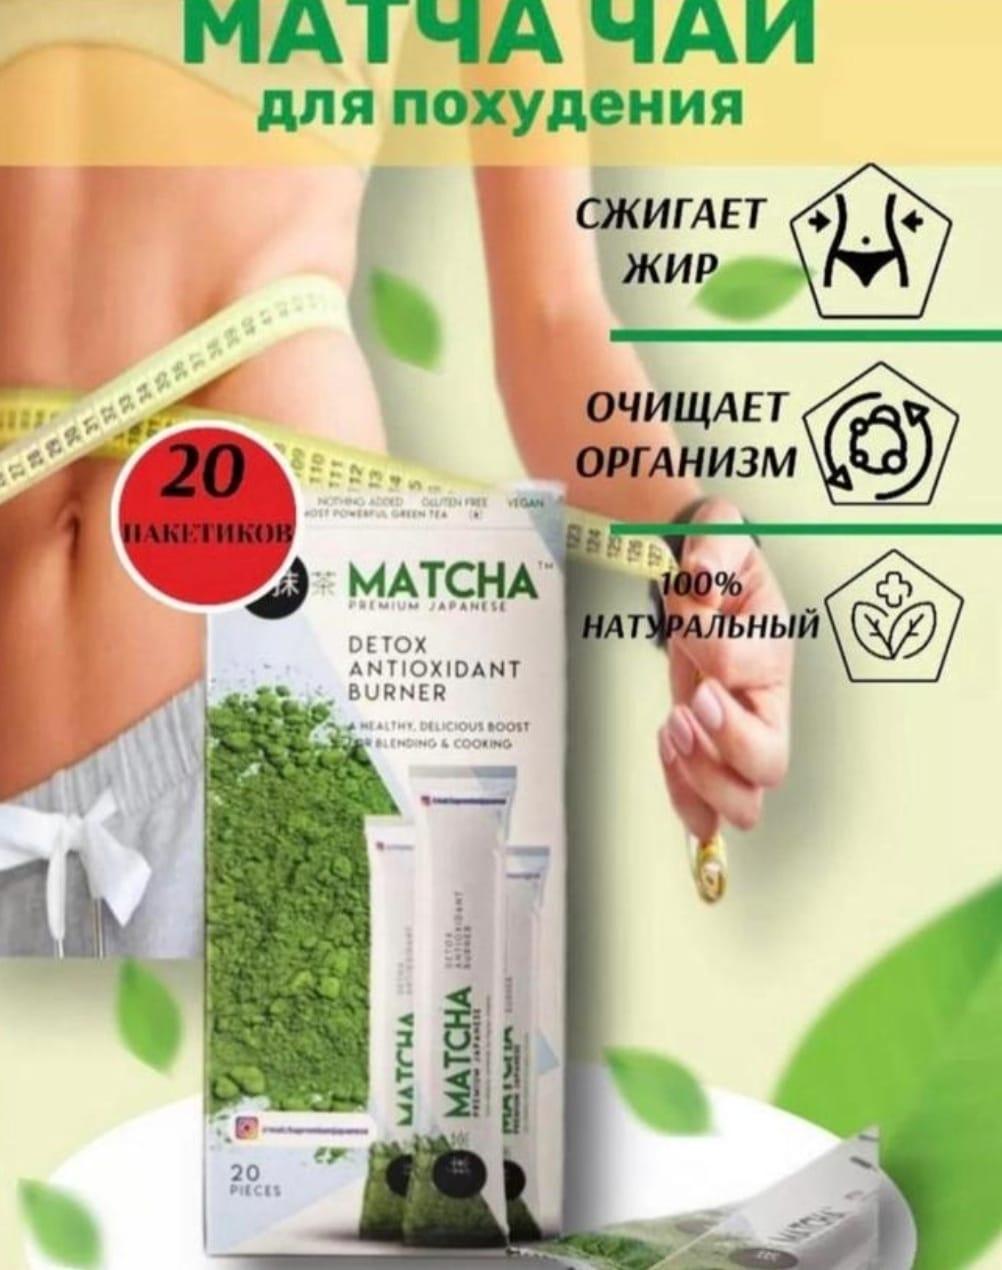 Matcha detox ,Матча чай детокс для похудения Турция оригинал, фото 1